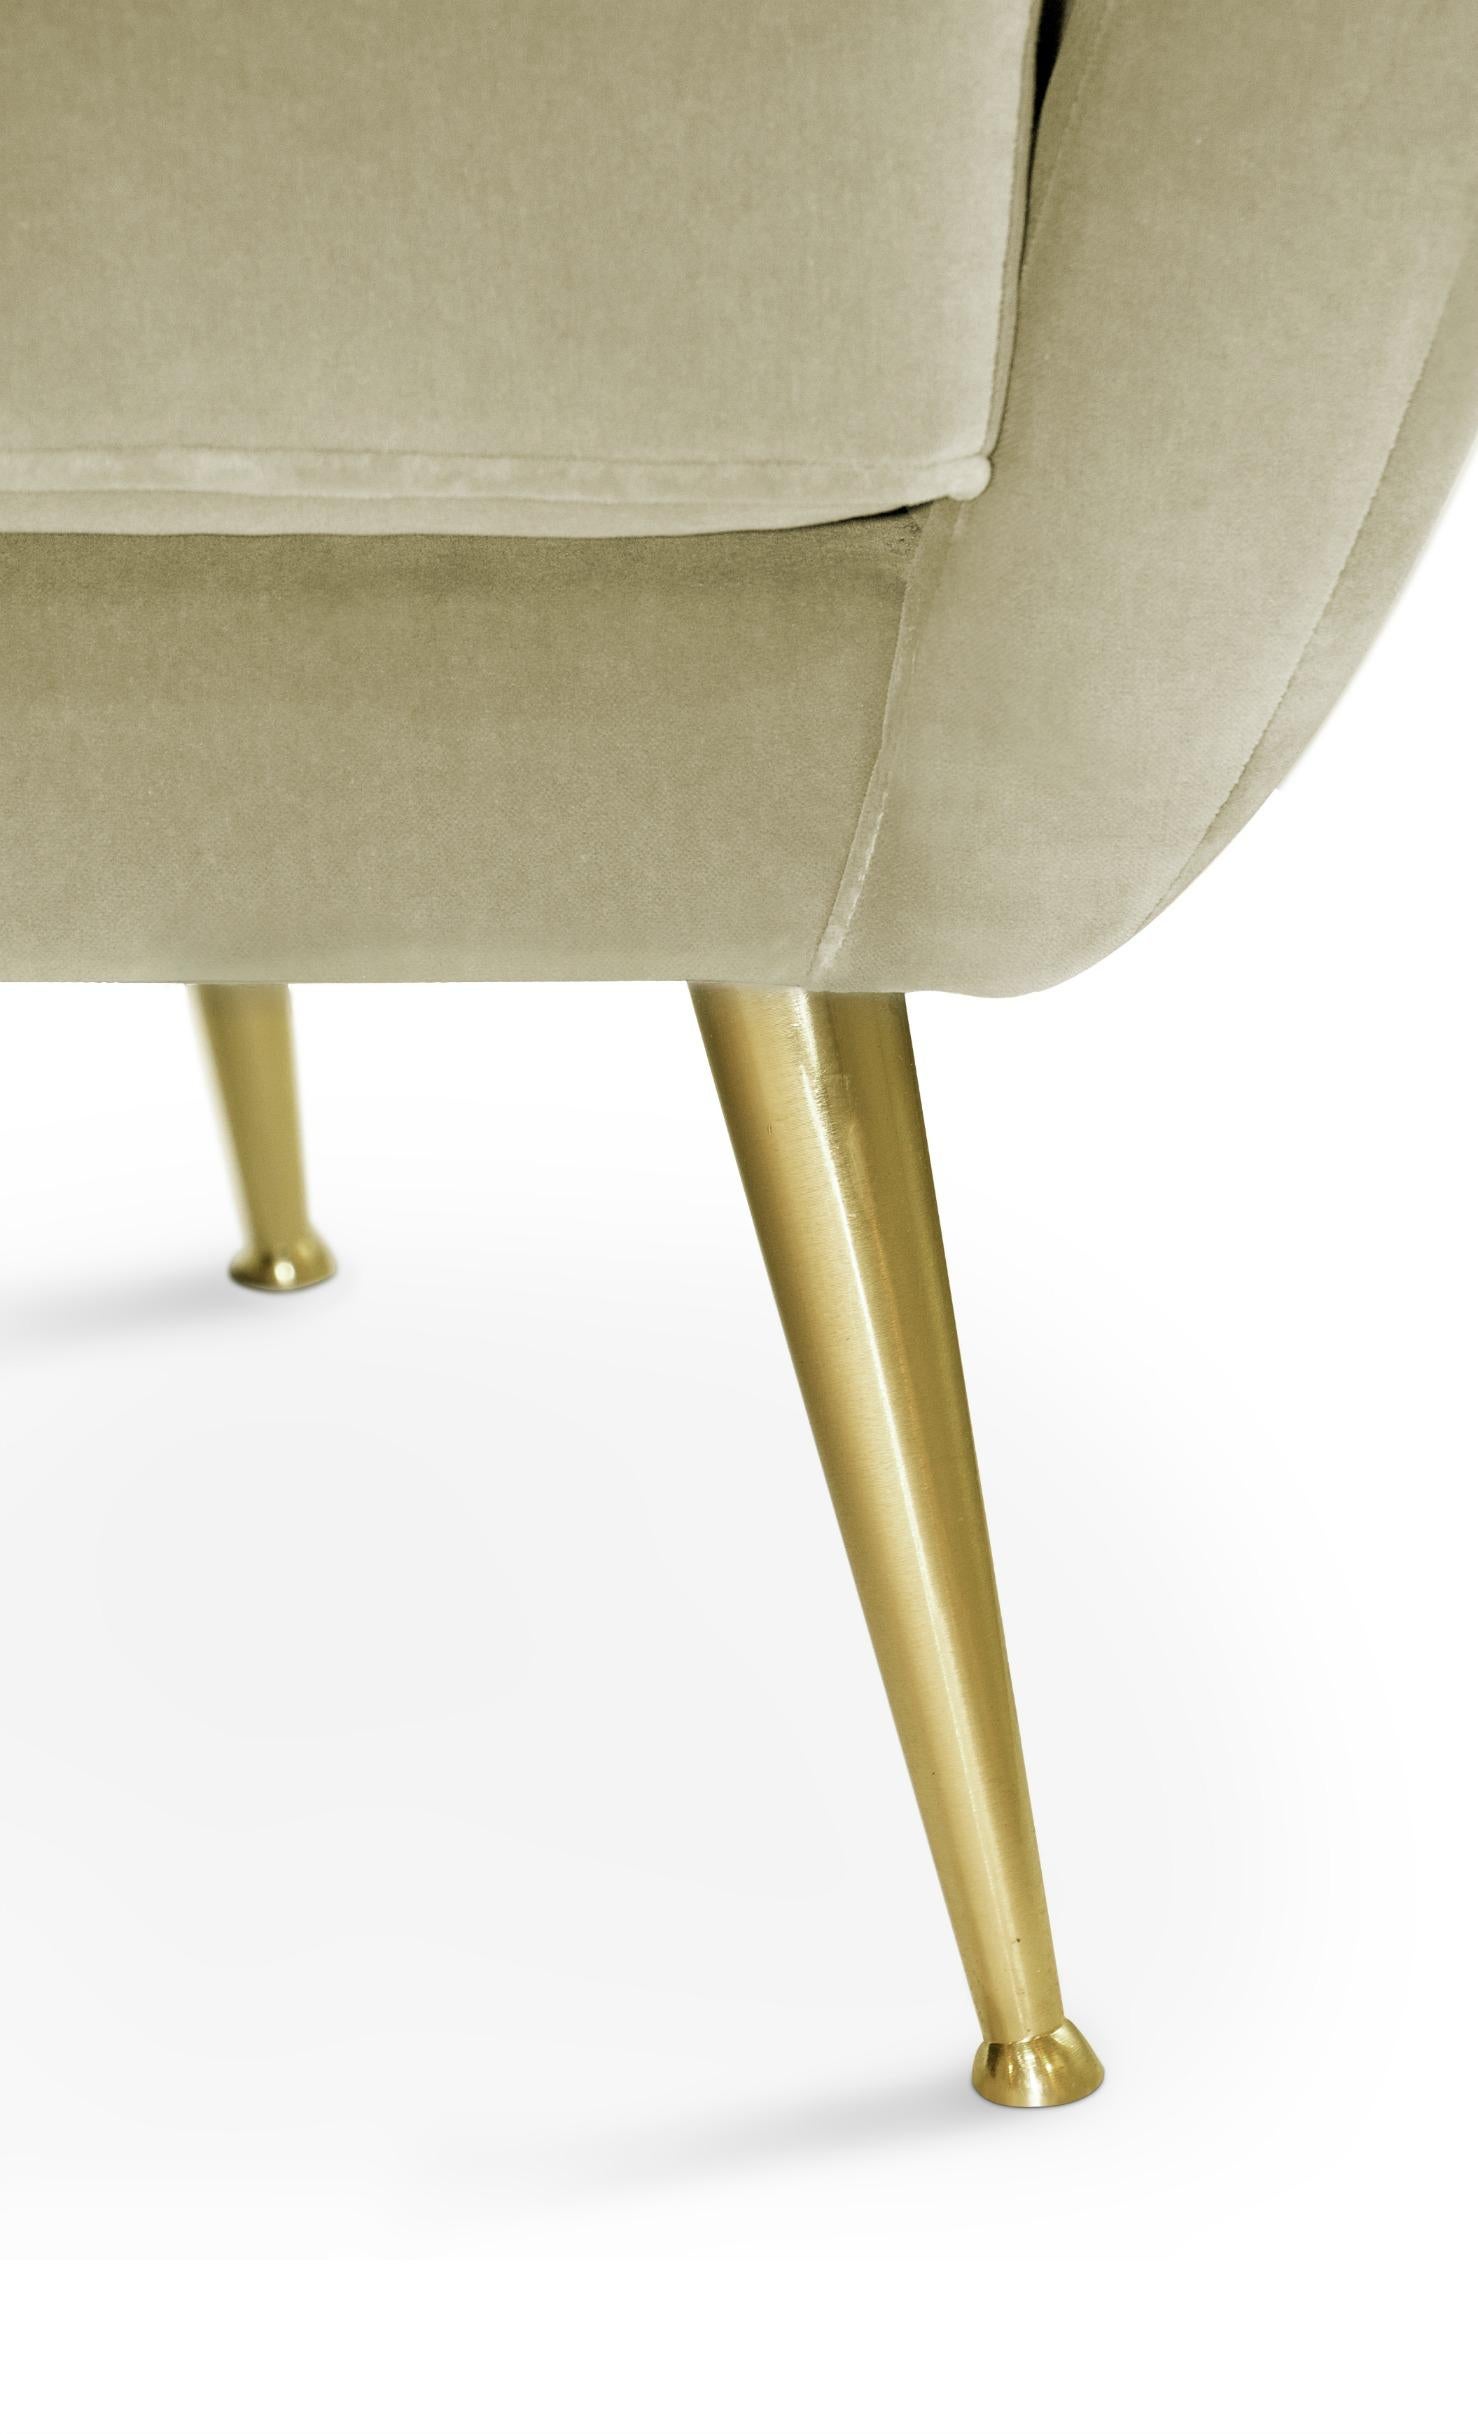 Art Deco Hermes Sofa in Cotton Velvet With Gold Finish Legs by Brabbu For Sale